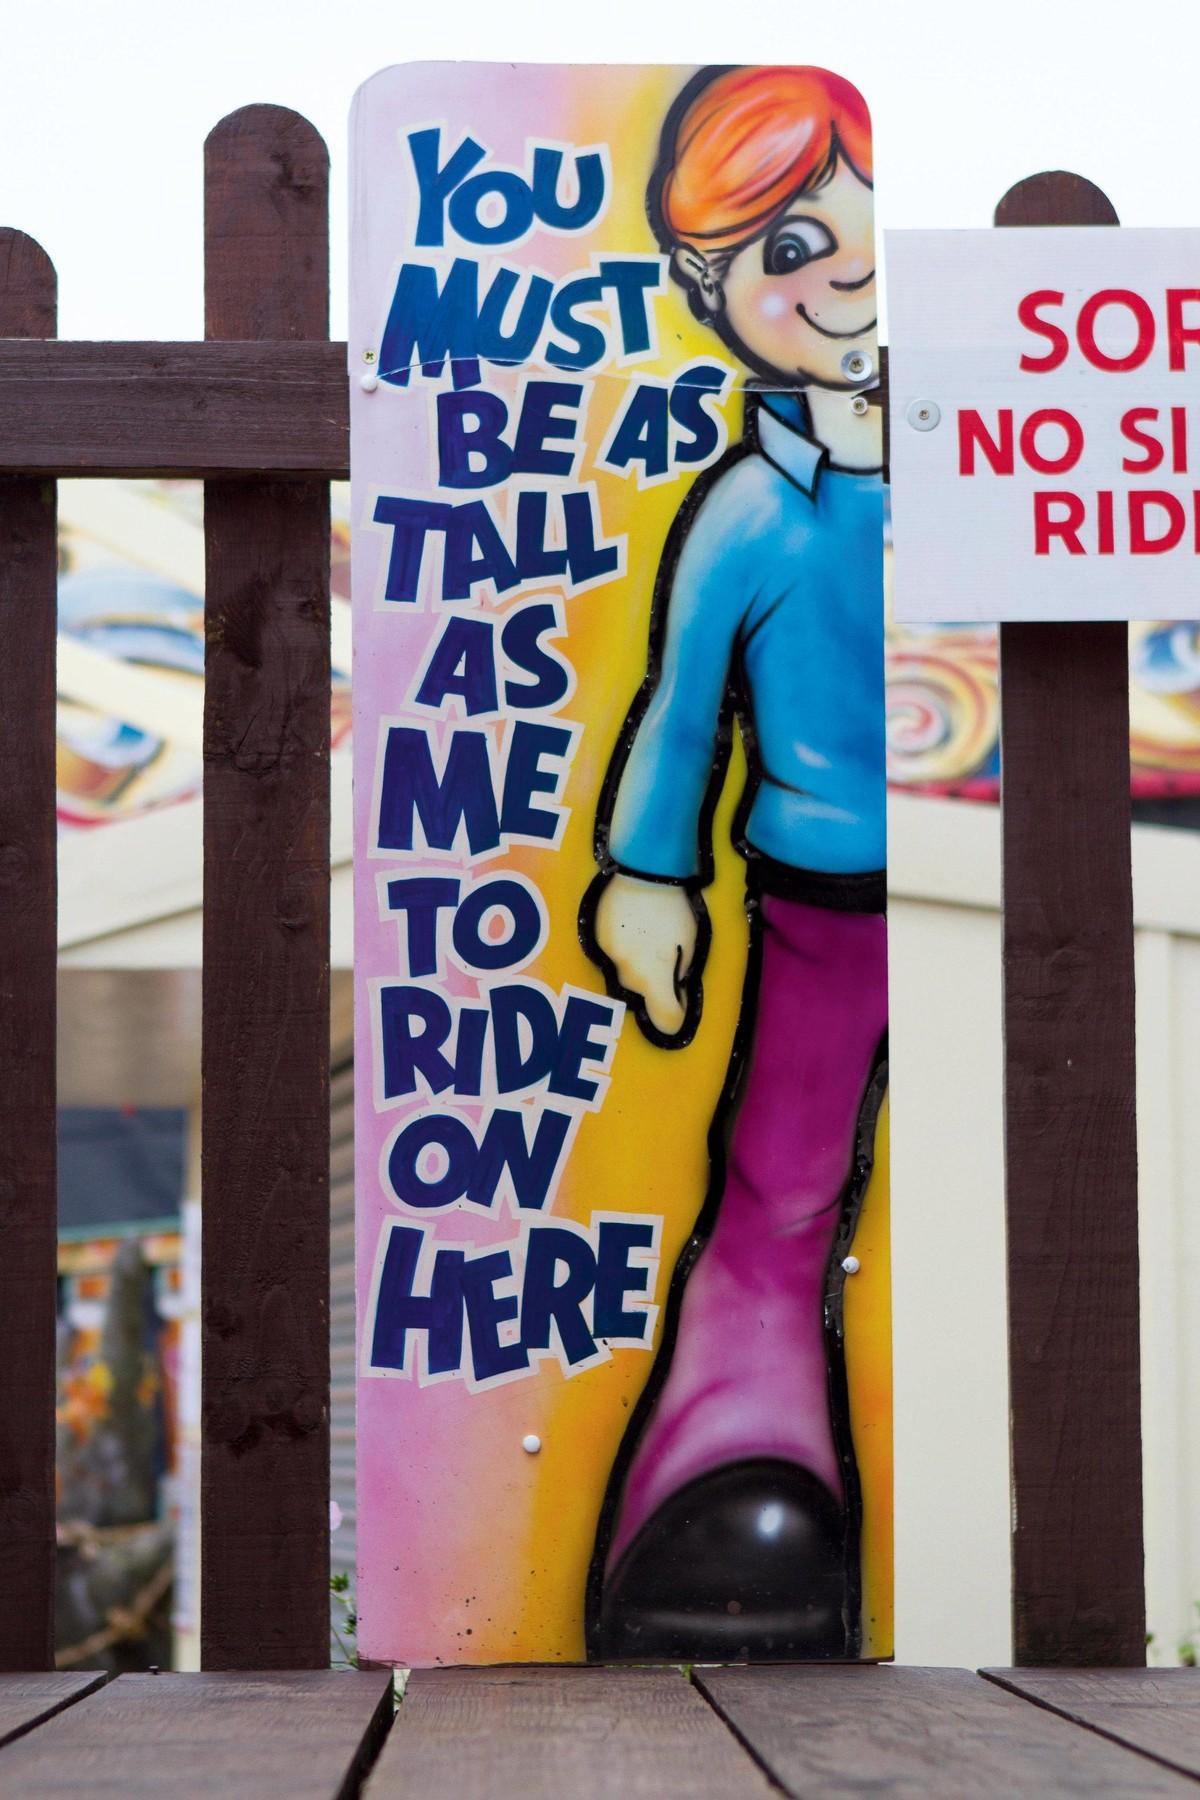 Pleasureland ride